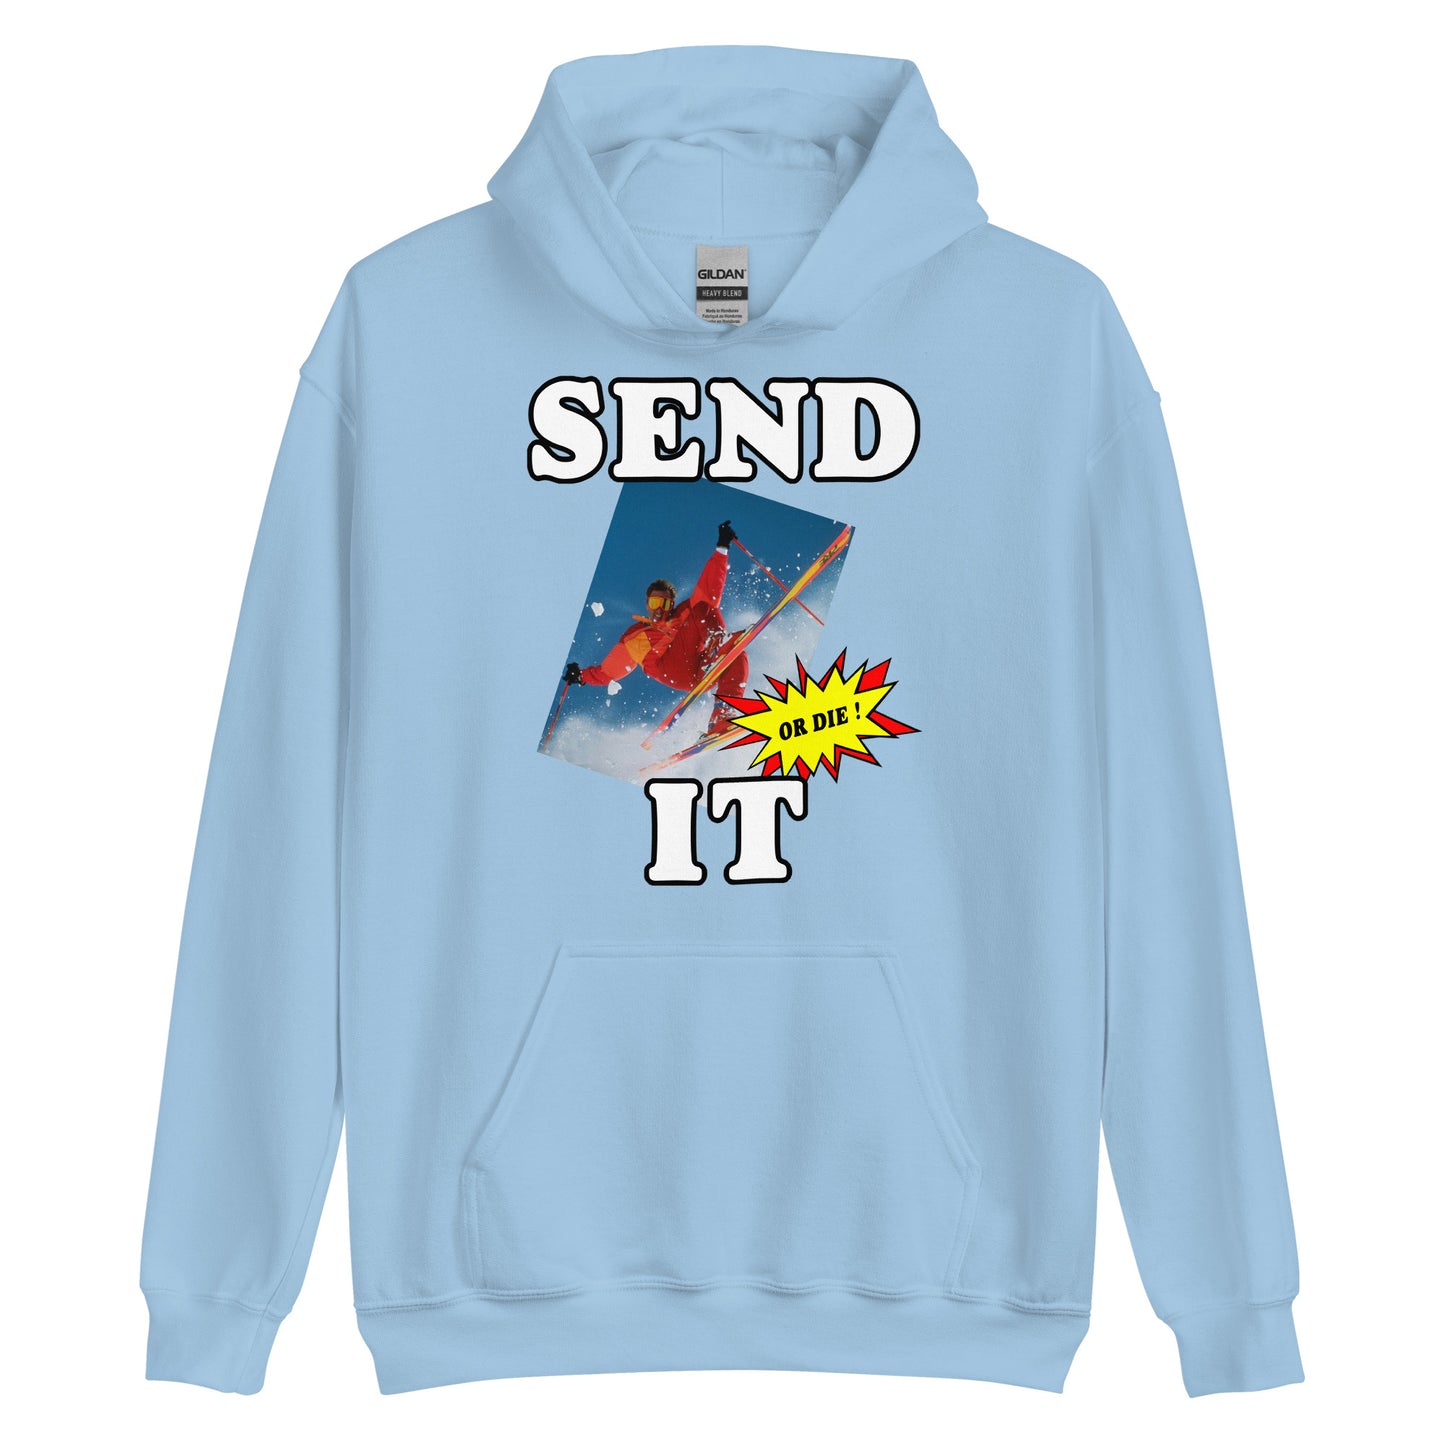 Send it or die extreme skiier printed hoodie by Whistler Shirts